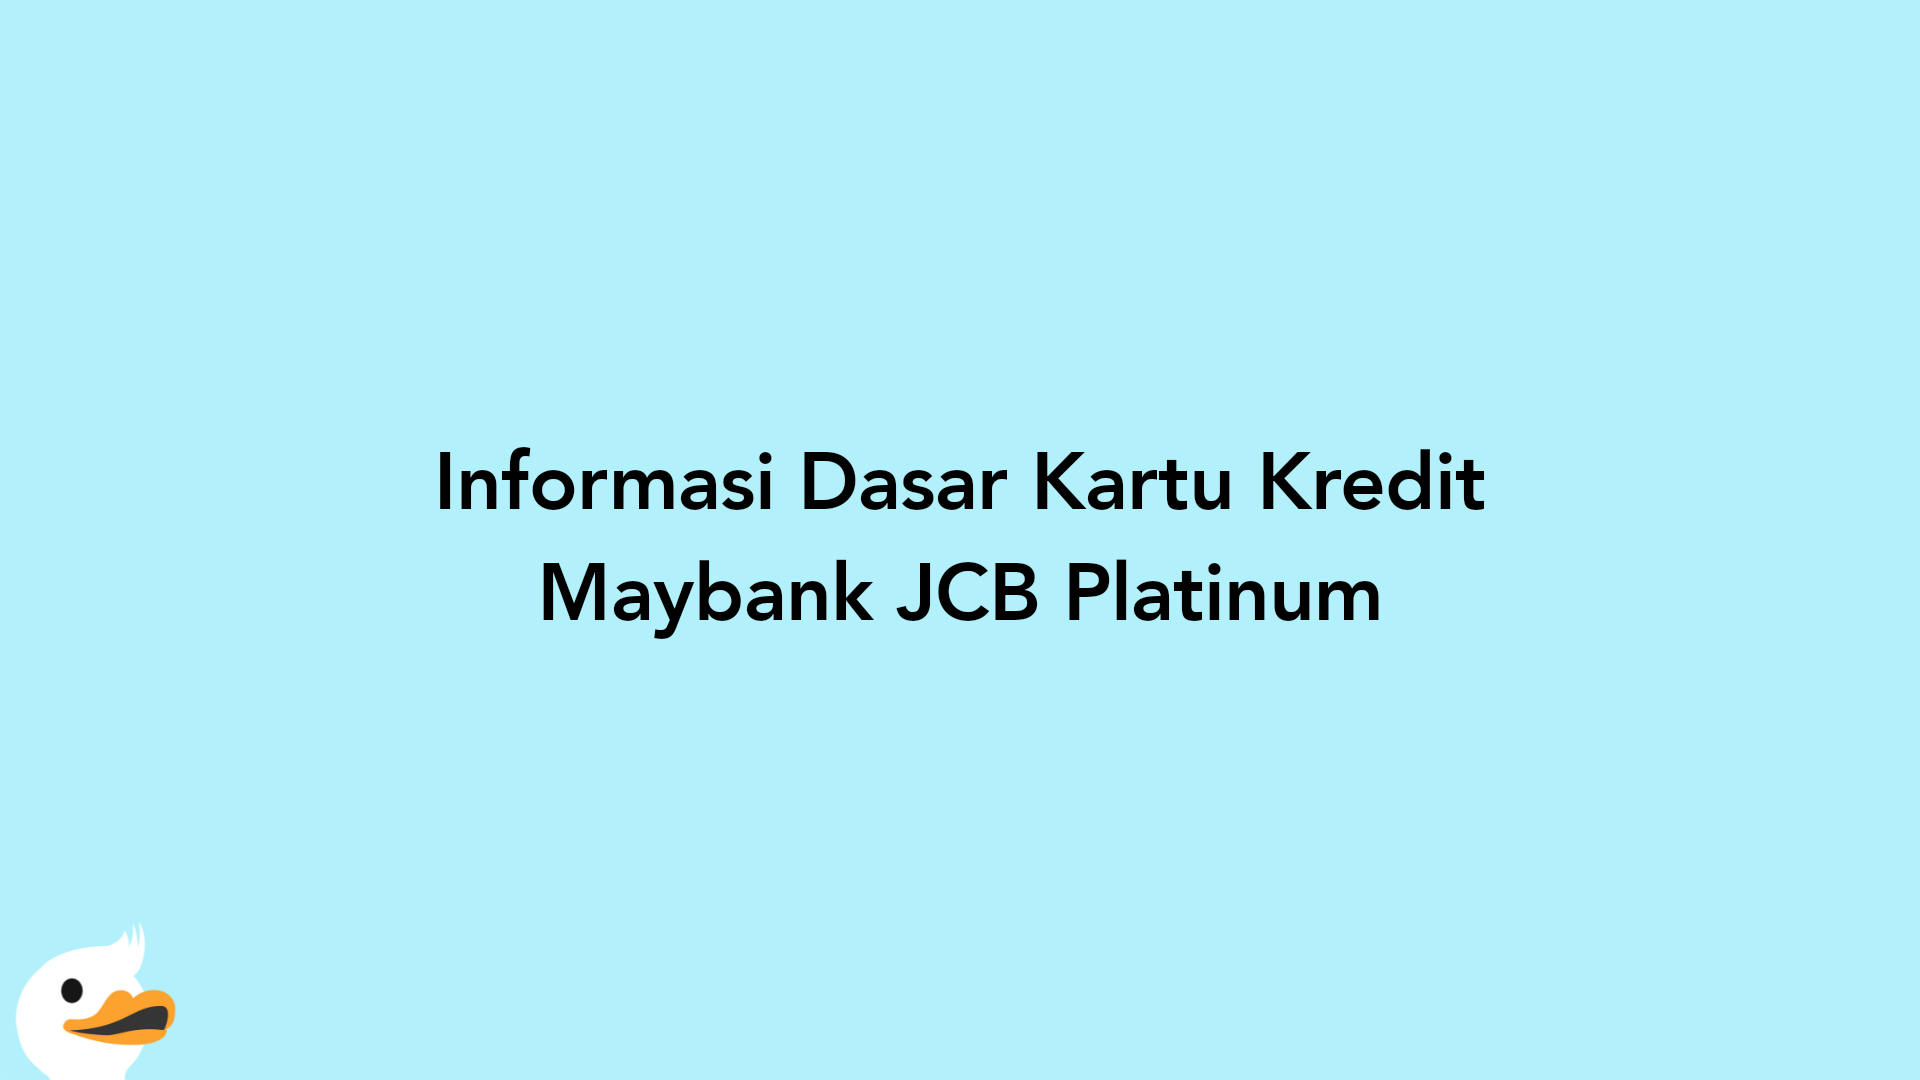 Informasi Dasar Kartu Kredit Maybank JCB Platinum